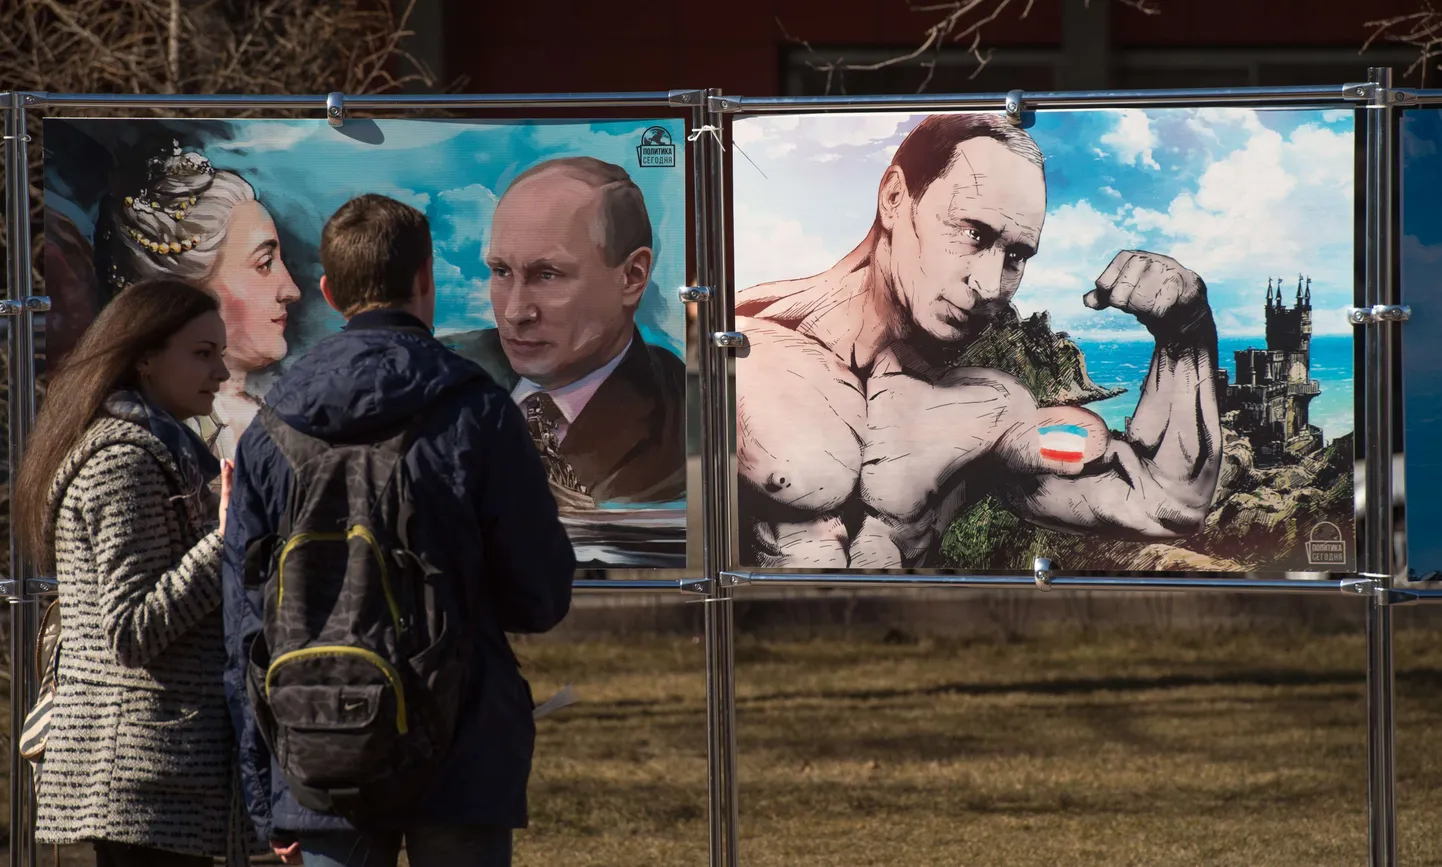 Krimmi poolsaarel näeb vabaõhunäitust, kus figureerib kangelasena Venemaa president Vladrimir Putin.